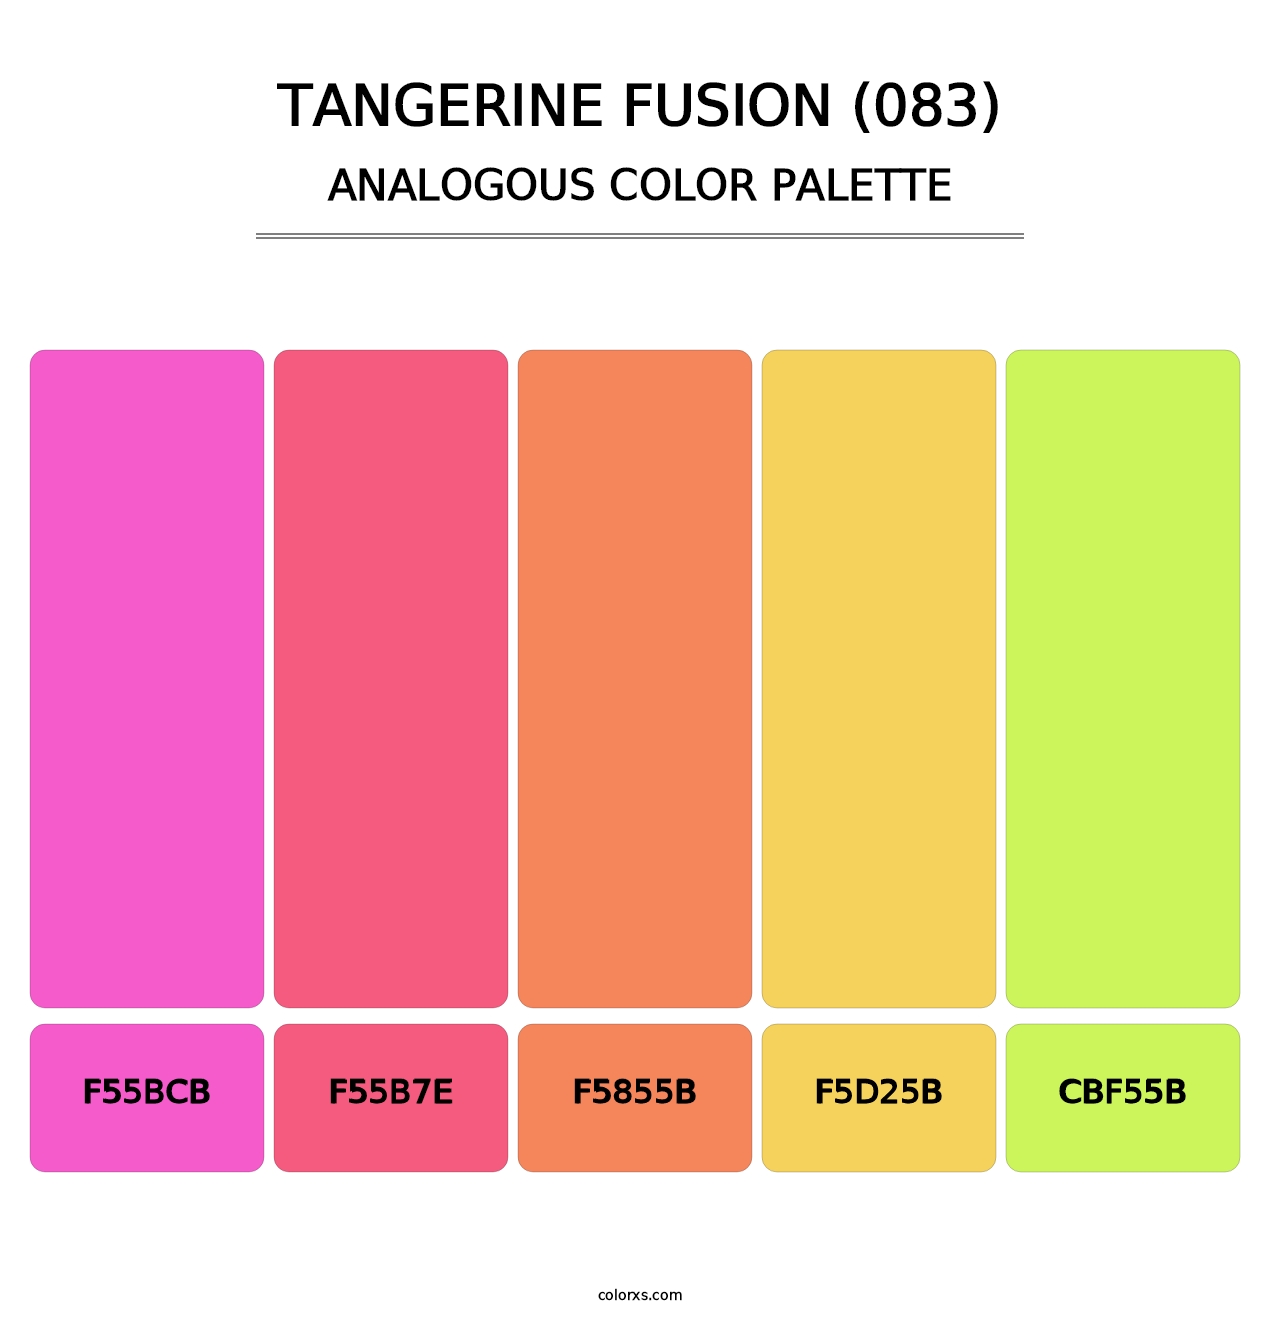 Tangerine Fusion (083) - Analogous Color Palette